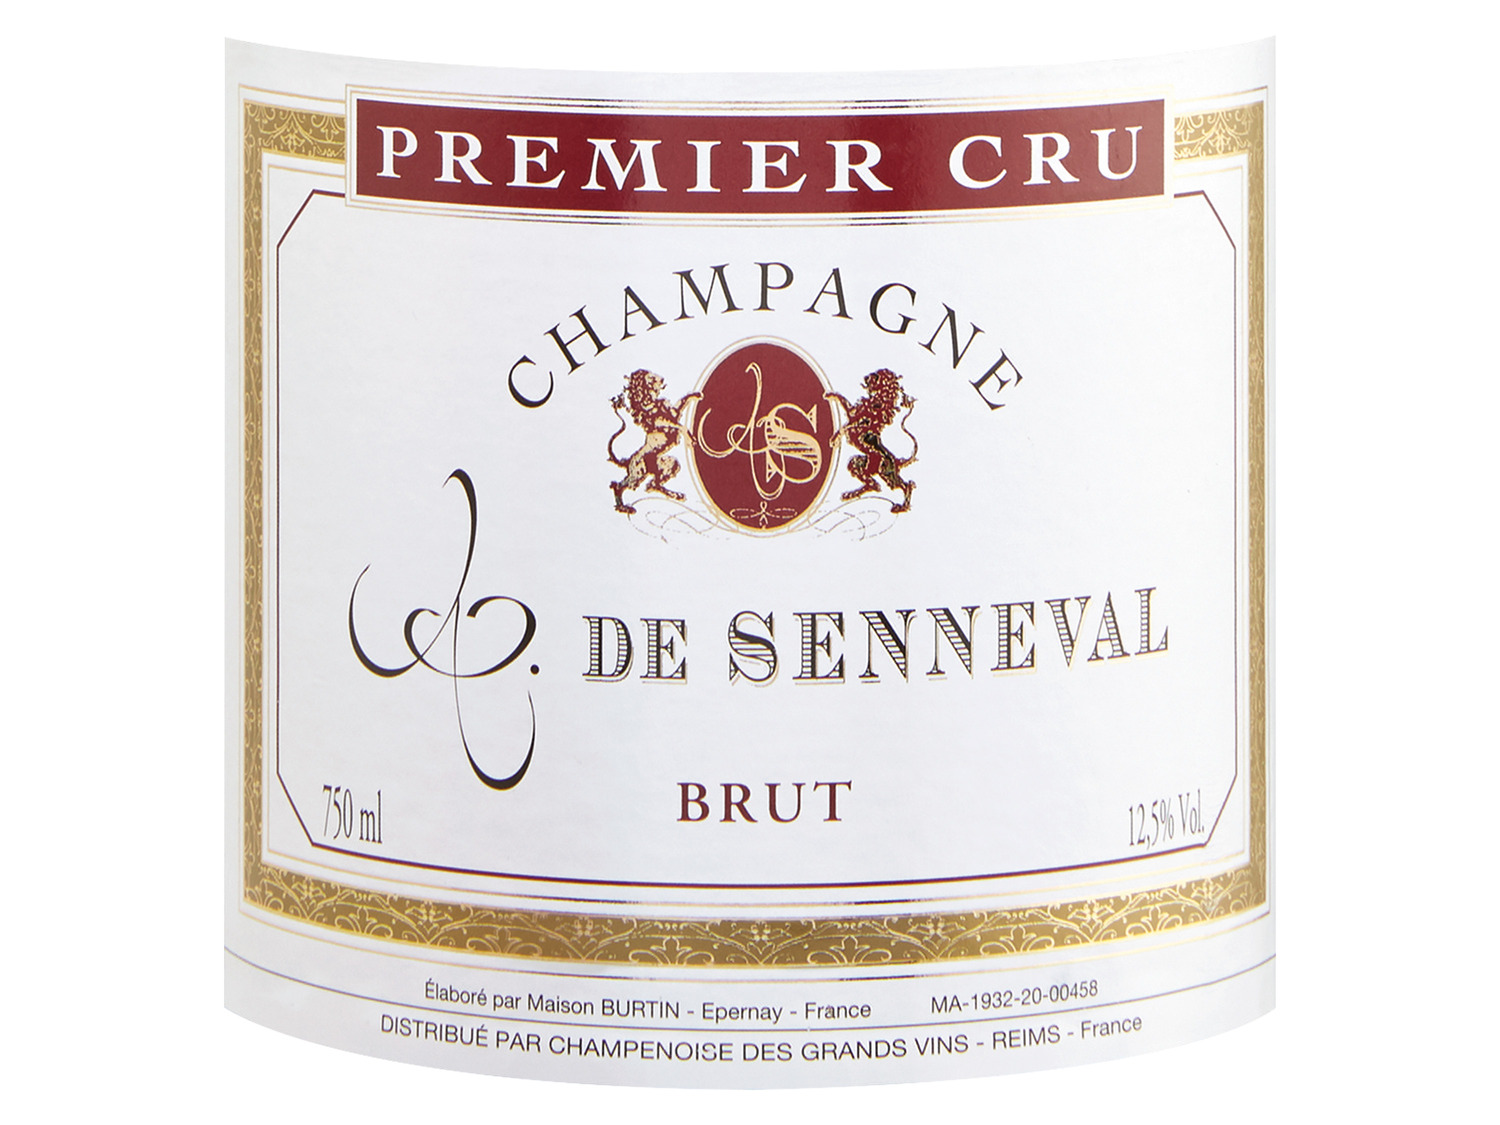 Premier Comte brut, de Champagner Senneval Cru 2011